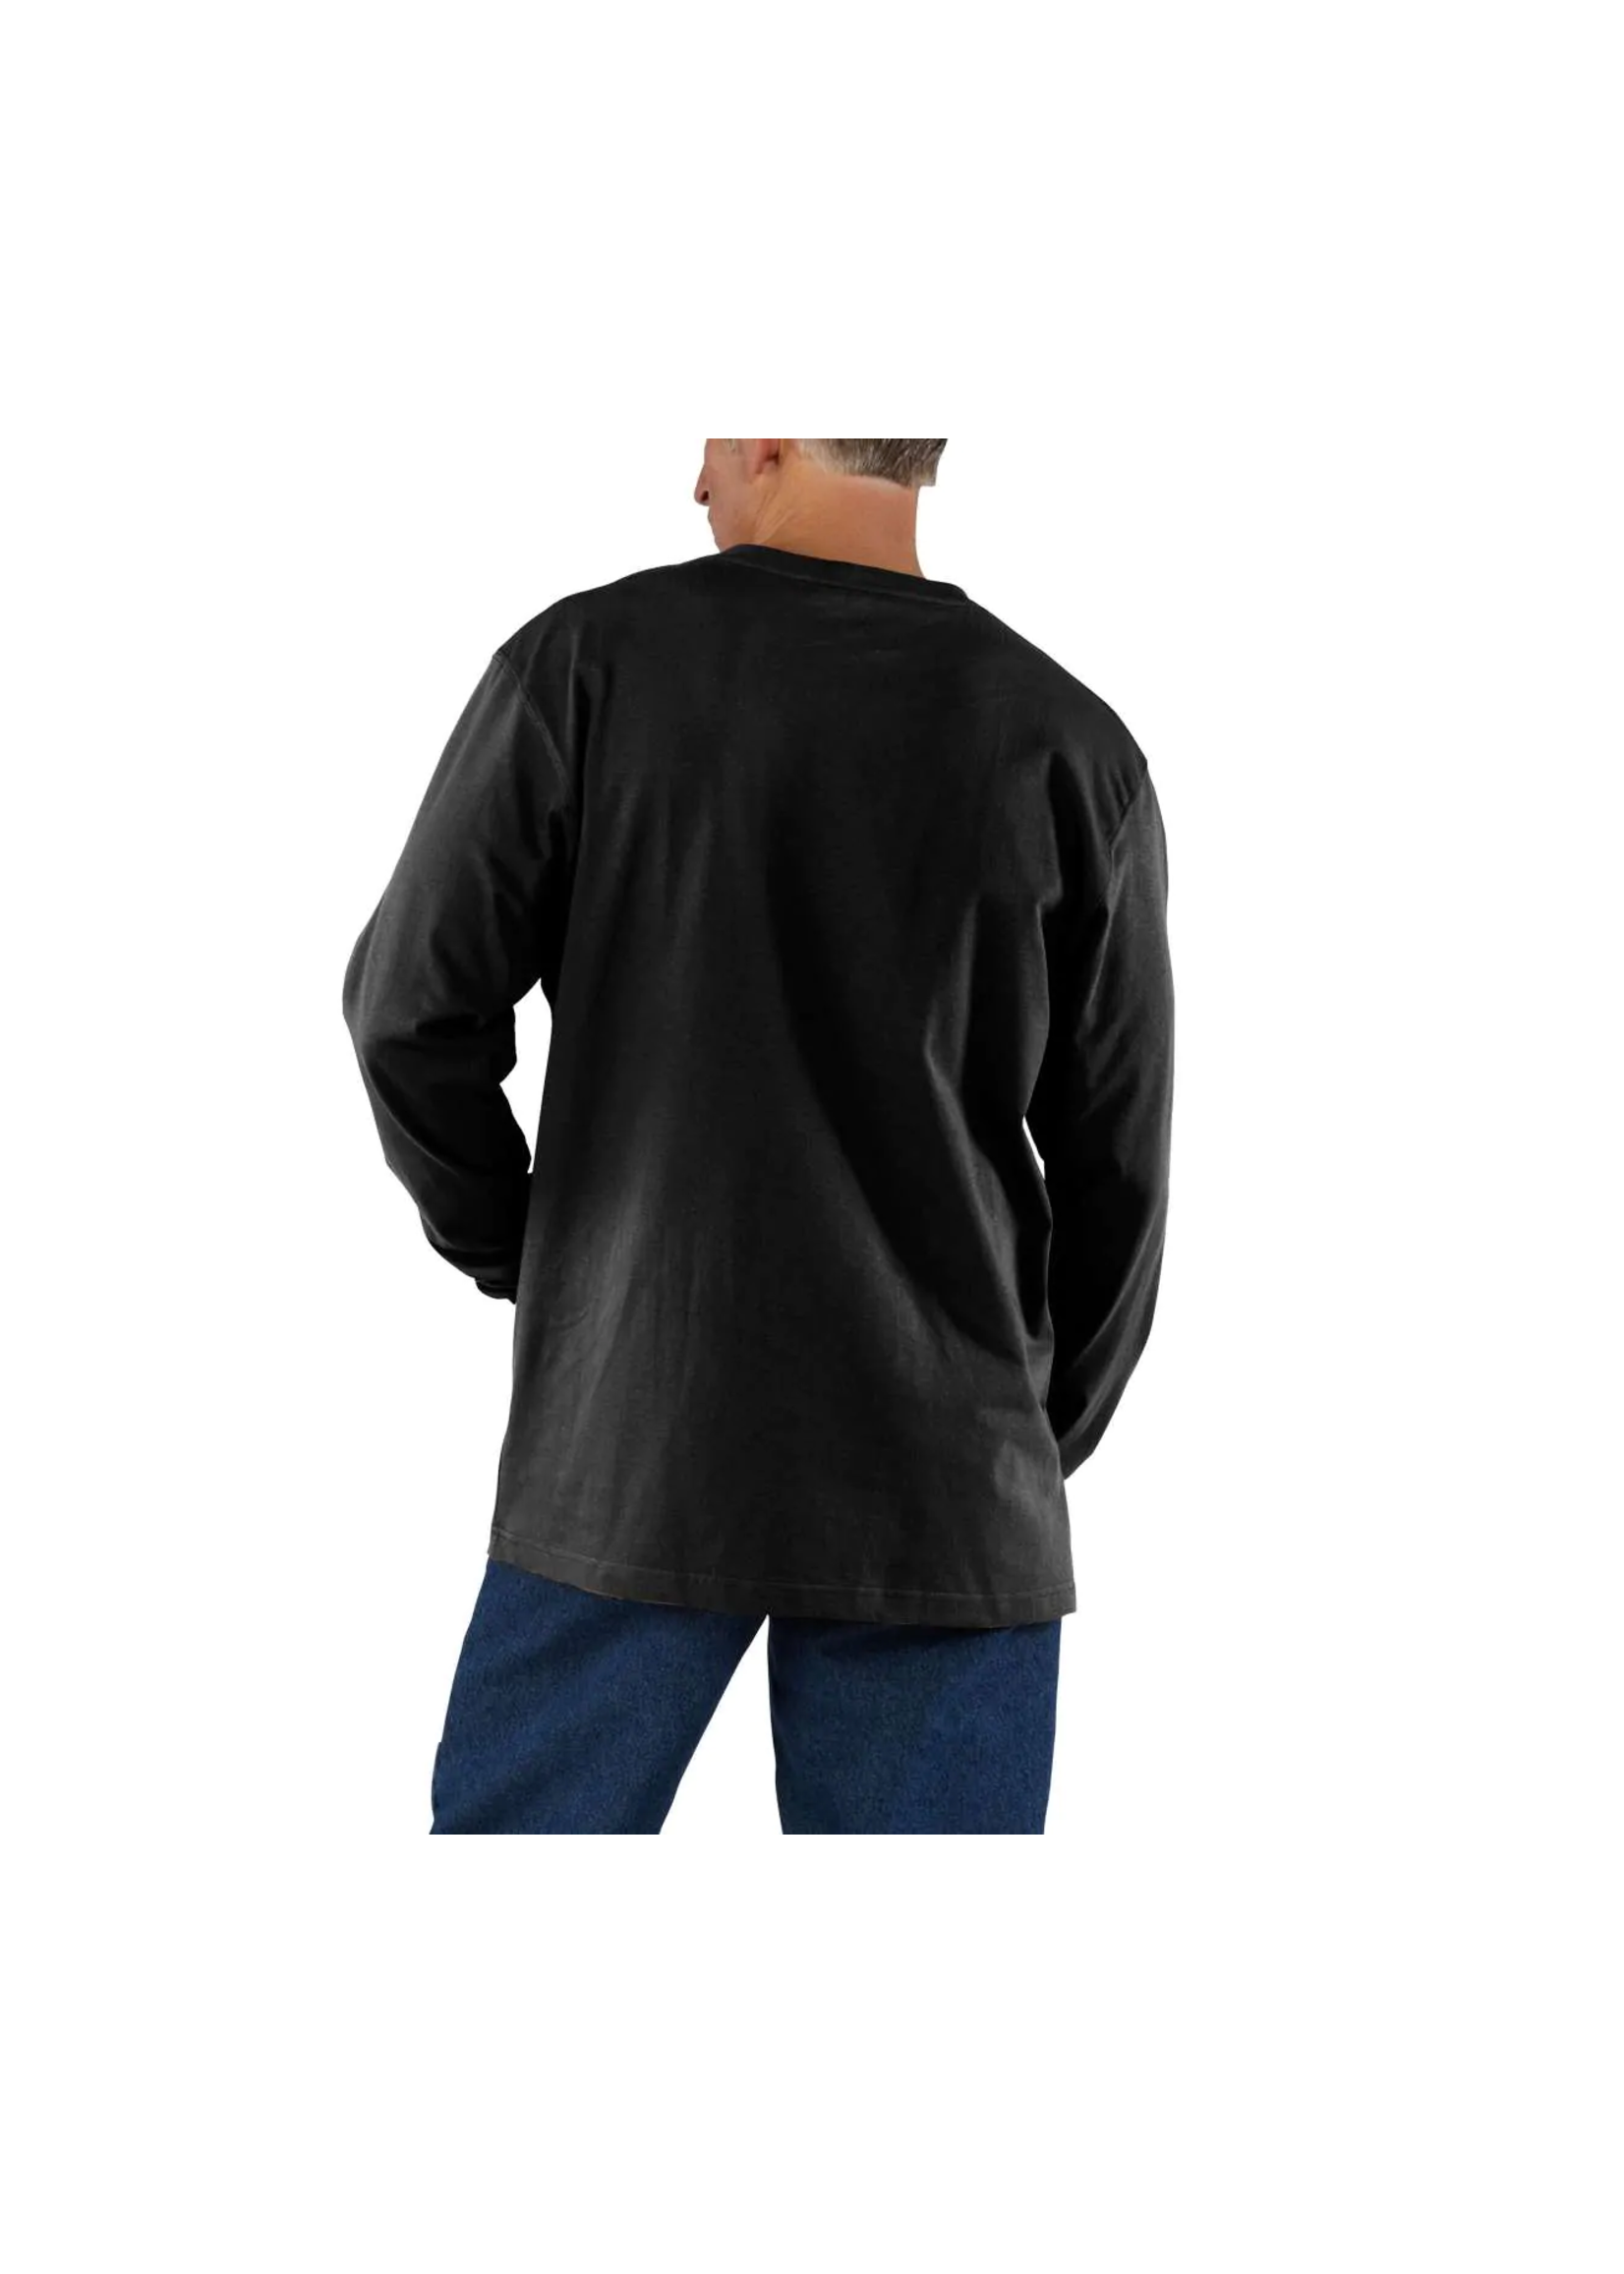 Carhartt Workwear Pkt LS T Shirt - Tall